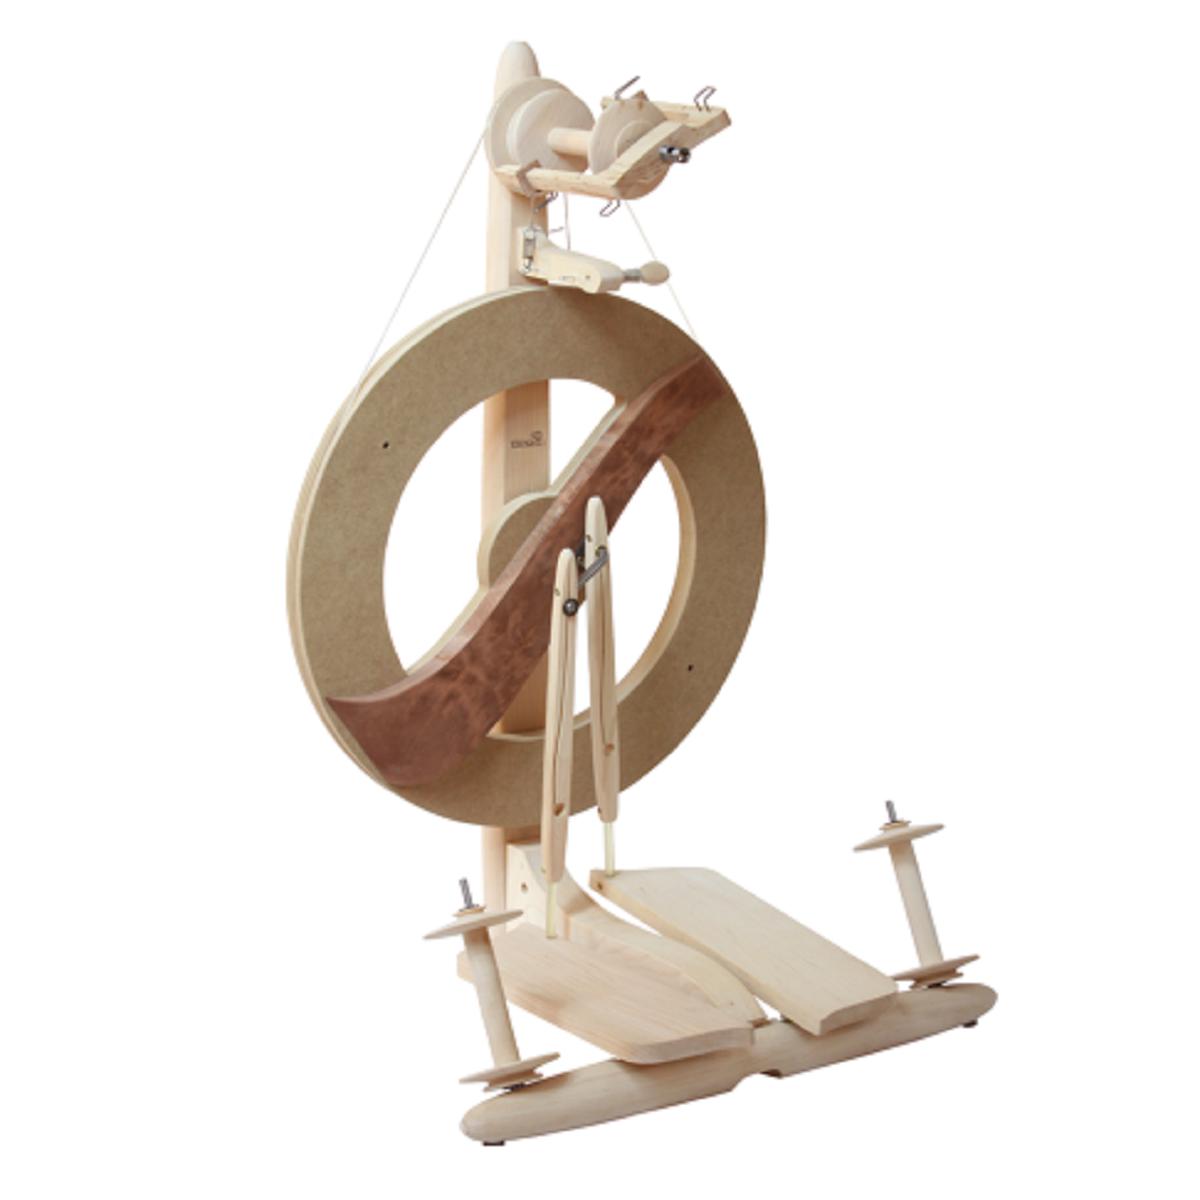 Kromski Fantasia Spinning Wheel-Spinning Wheel-Kromski-Unfinished-Revolution Fibers